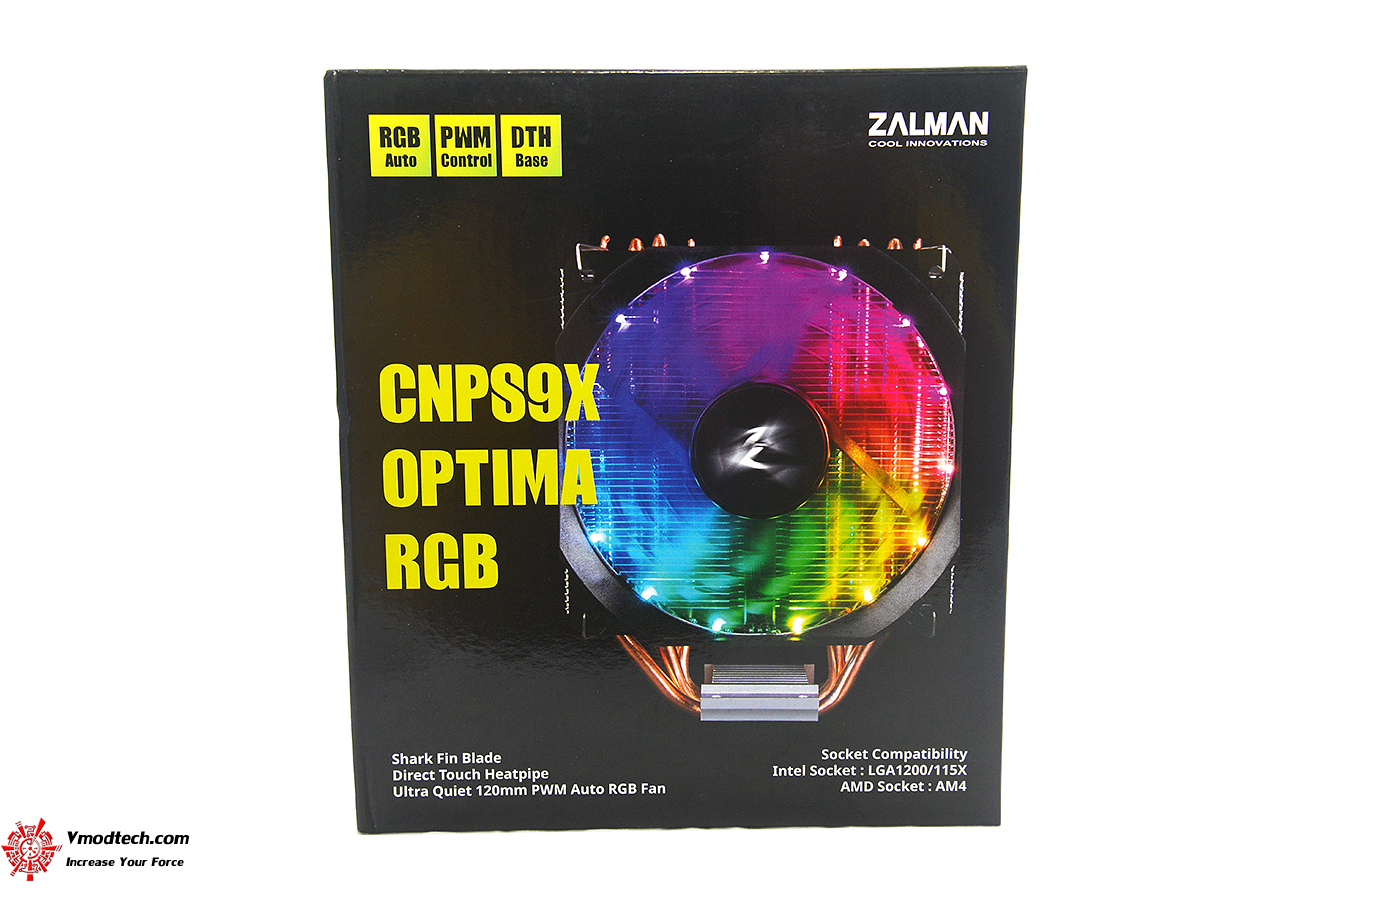 dsc 7464 ZALMAN CNPS9X OPTIMA RGB REVIEW